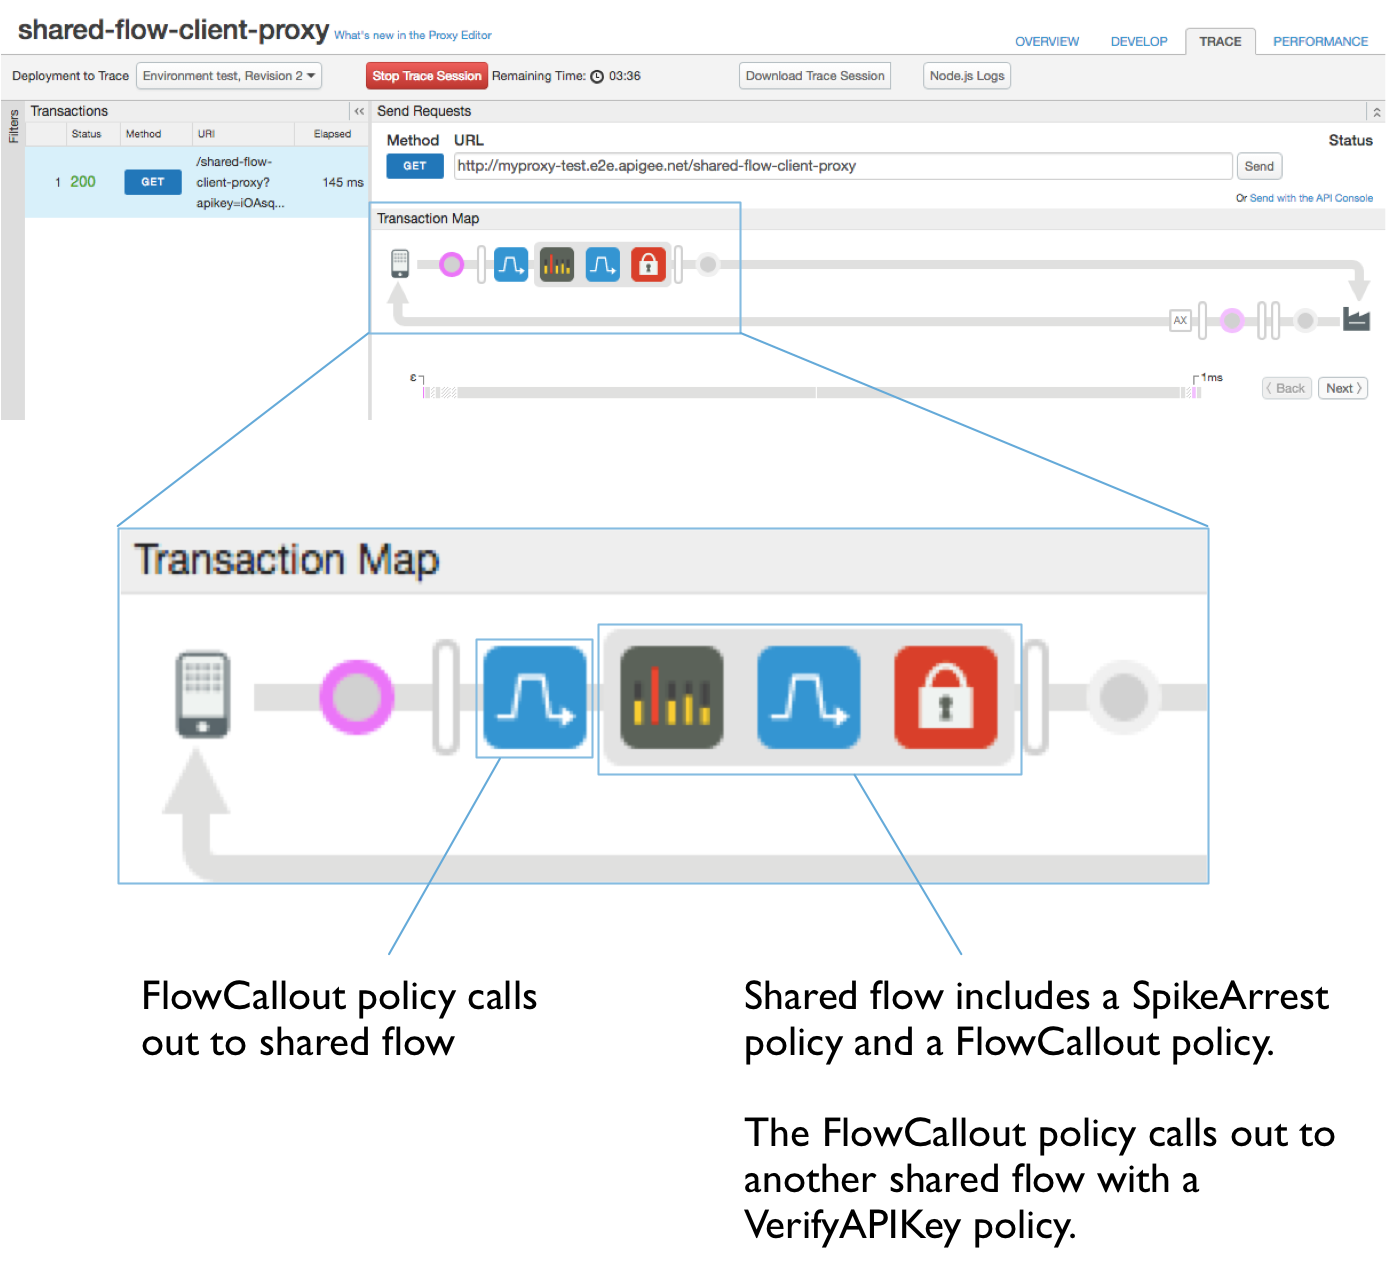 트랜잭션 지도  콜아웃 텍스트:
a) FlowCallout 정책이 공유 흐름을 호출합니다.
            b) 공유 흐름에는 SpokeArrest 정책 및 FlowCallout 정책이 포함됩니다.
            FlowCallout 정책은 VerifyAPIKey 정책으로 다른 공유 흐름을 호출합니다.